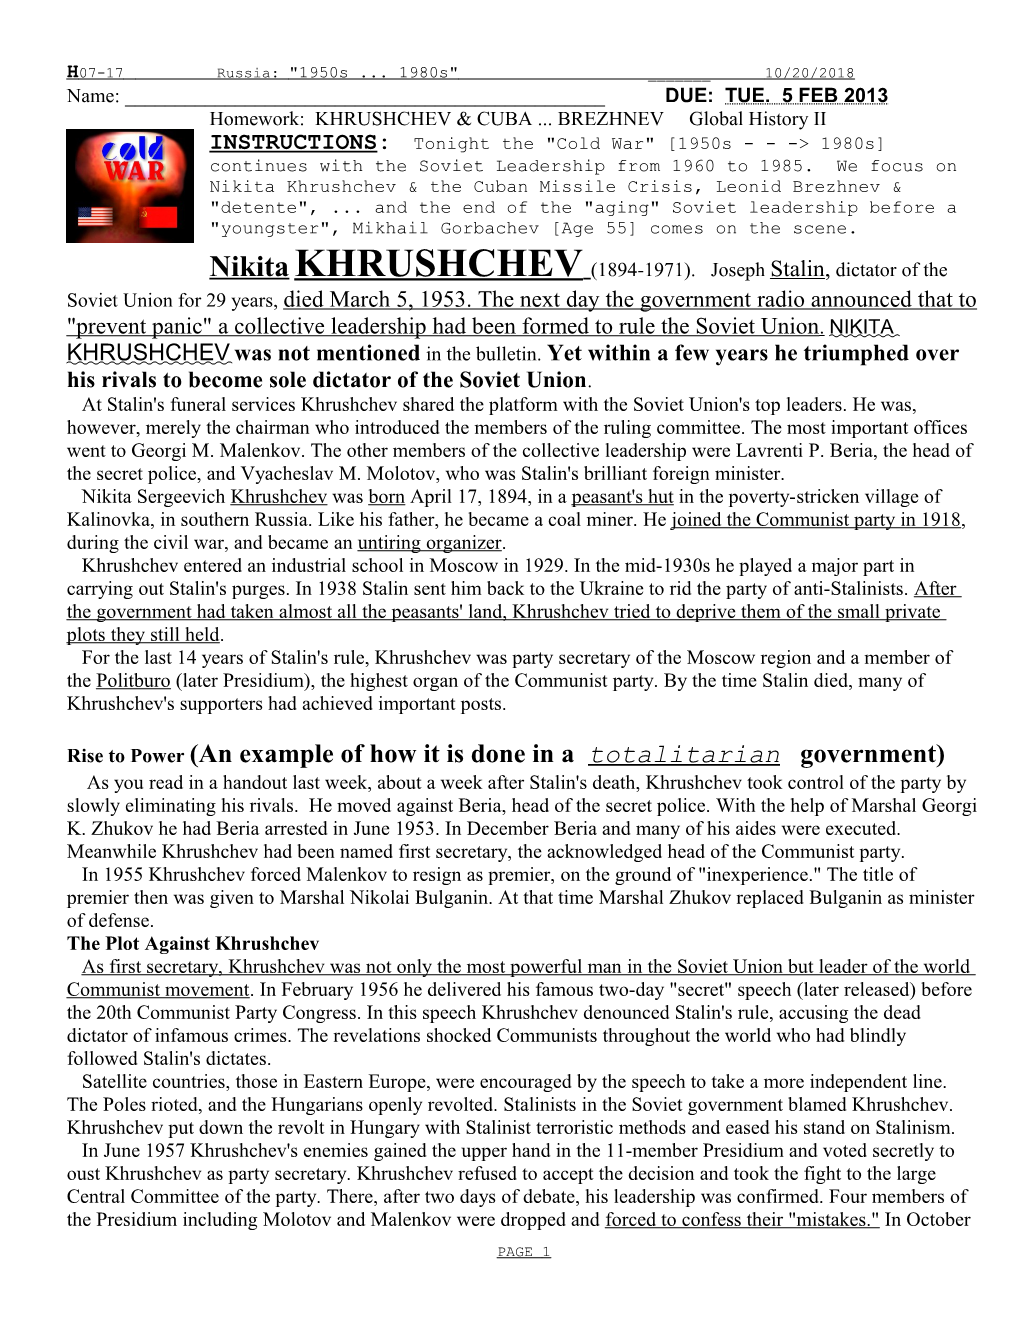 Khrushchev & the Cold War, the Arms Race & Leonid Breshnev & Detente